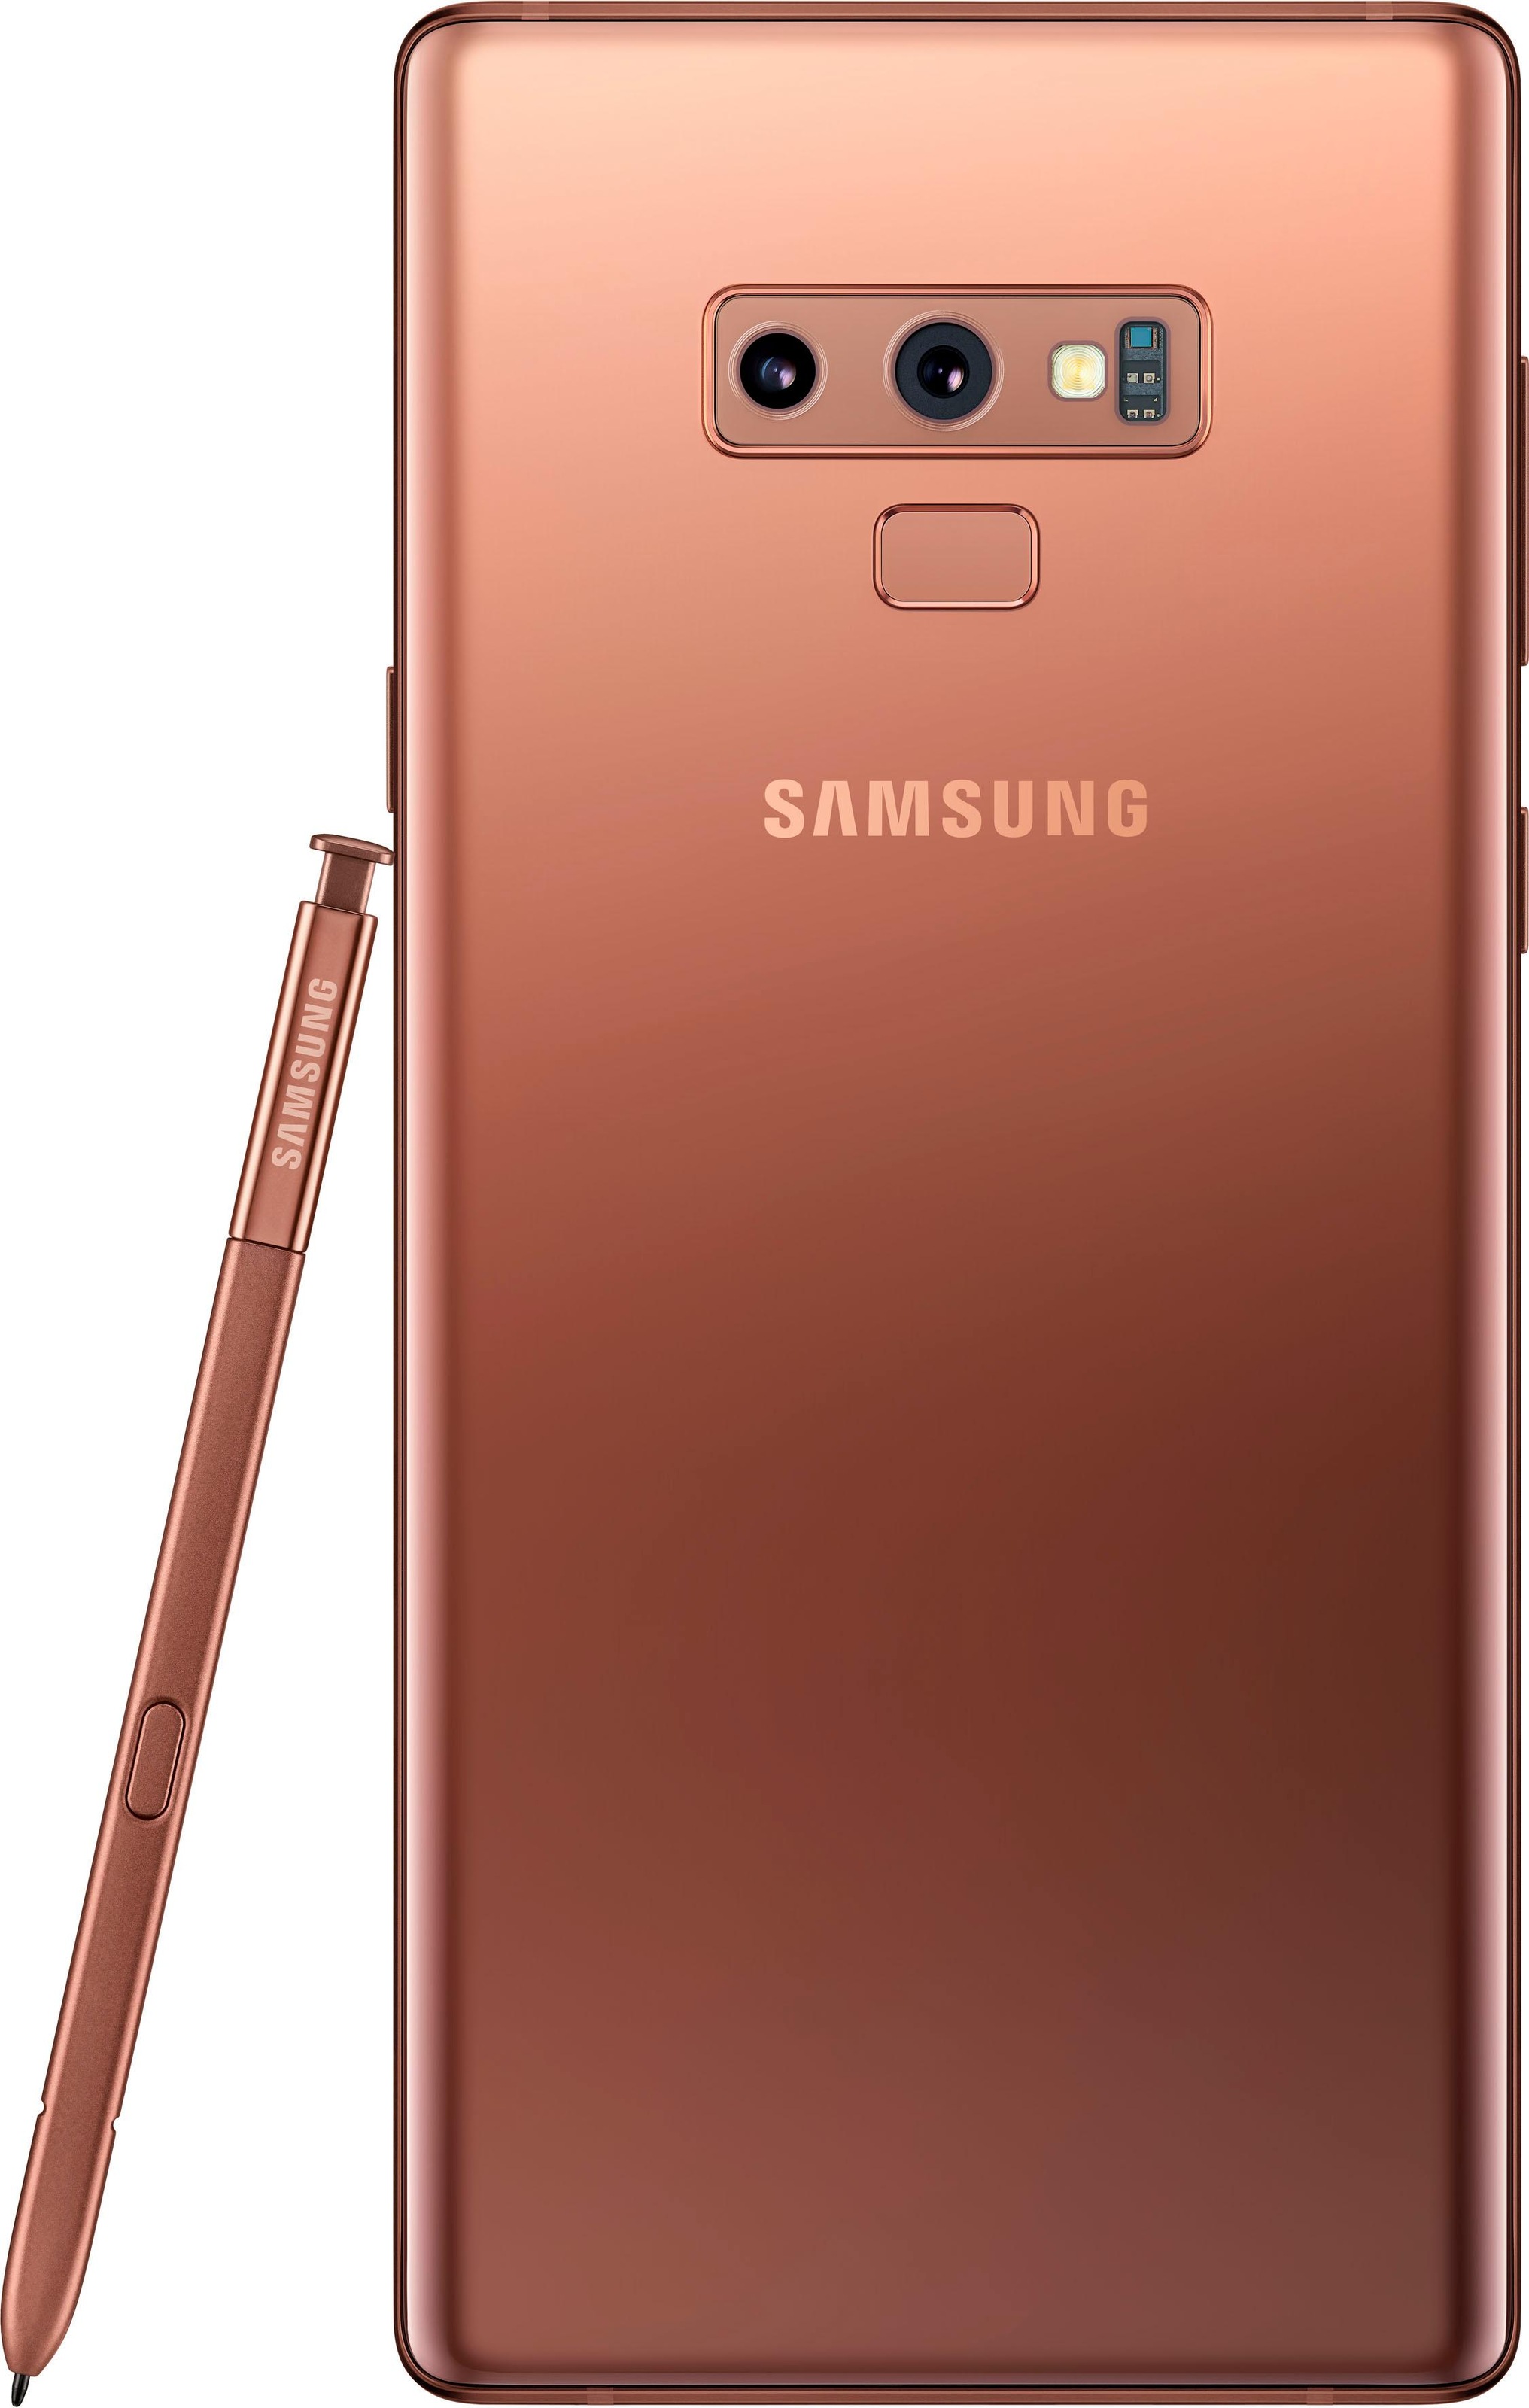 Samsung Galaxy Note 9 Smartphone 16 2 Cm 6 4 Zoll 512 Gb 12 Mp Kamera Jetzt Bestellen Bei Otto